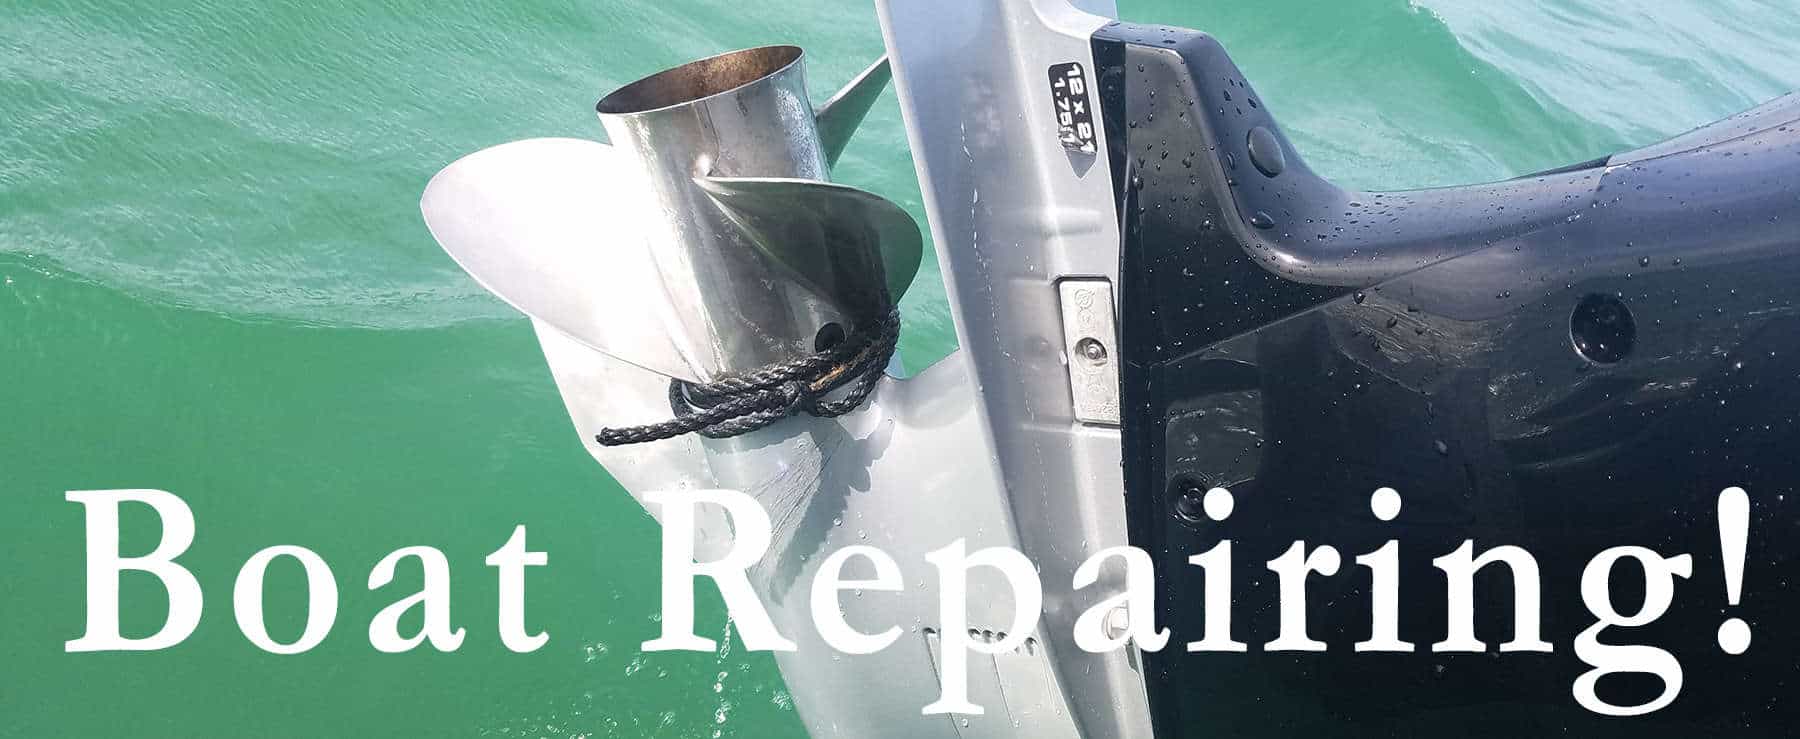 Born Again Boating - Boat Repair